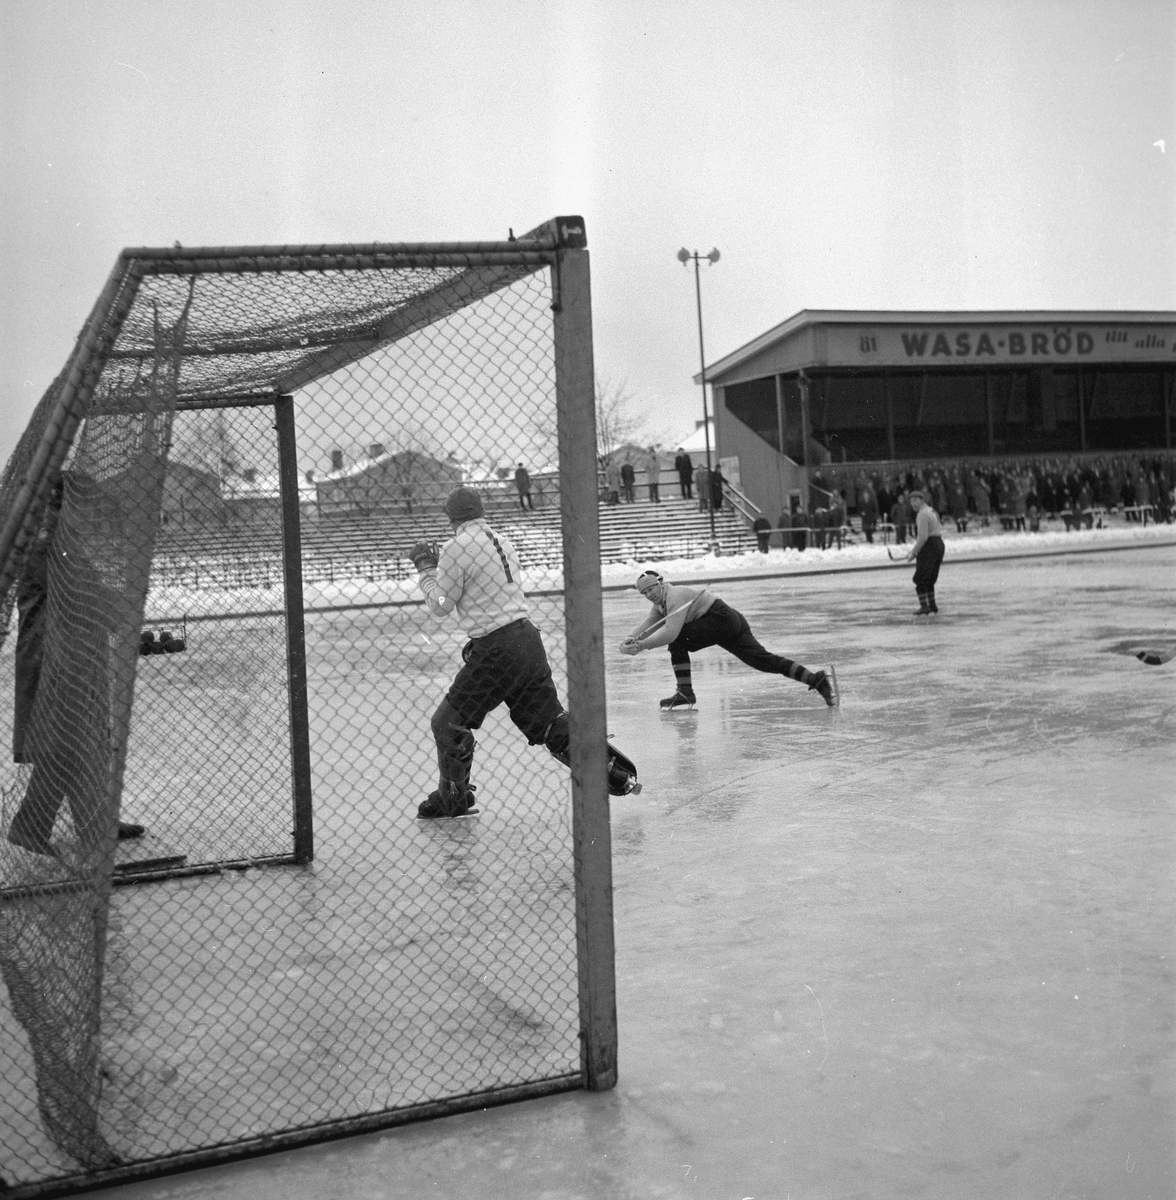 Bandy ÖSK-Västerstrand.
November 1956.